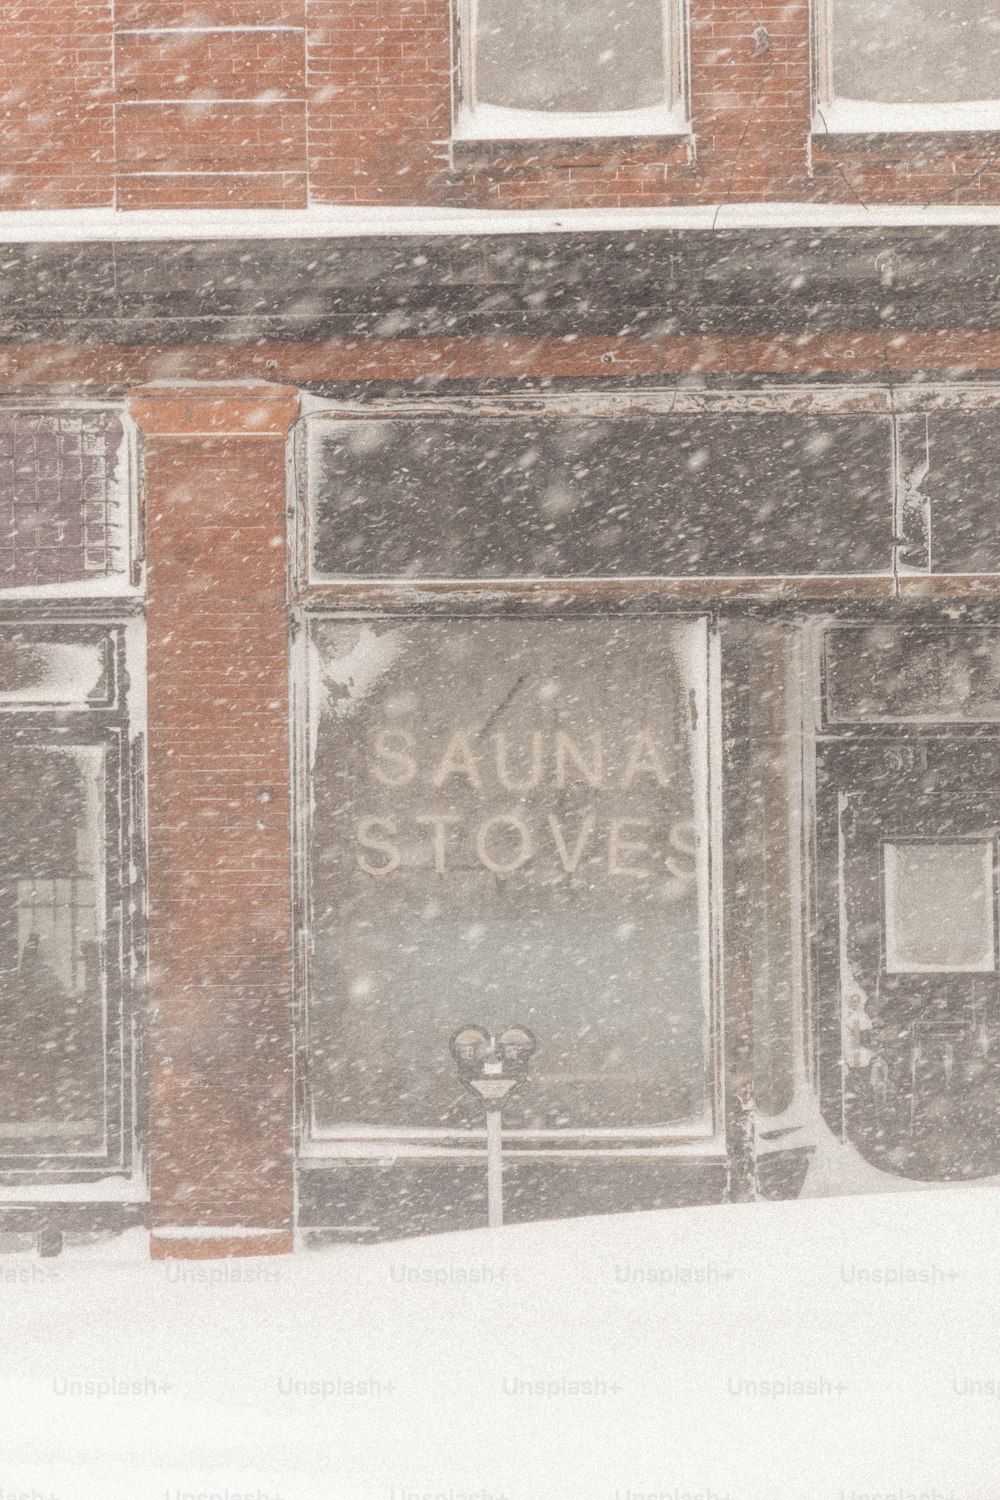 El escaparate de una tienda cubierto de nieve en un día nevado